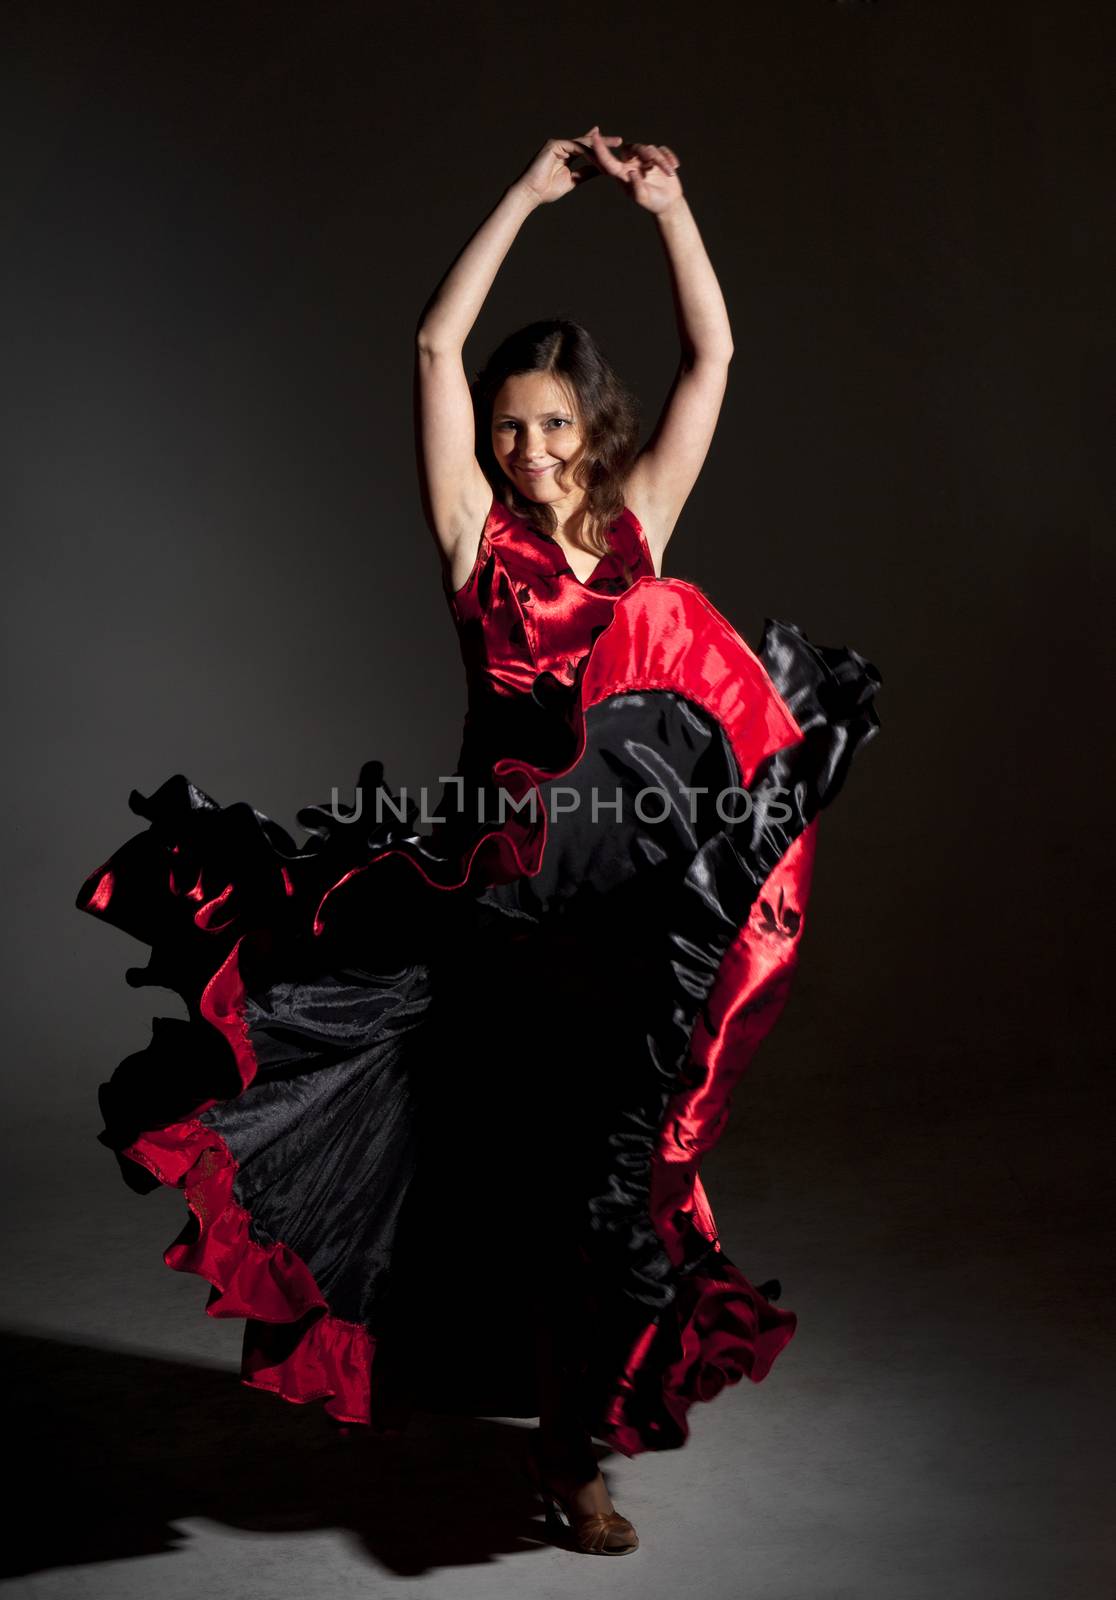 Young woman dancing flamenco, studio shot, gray background